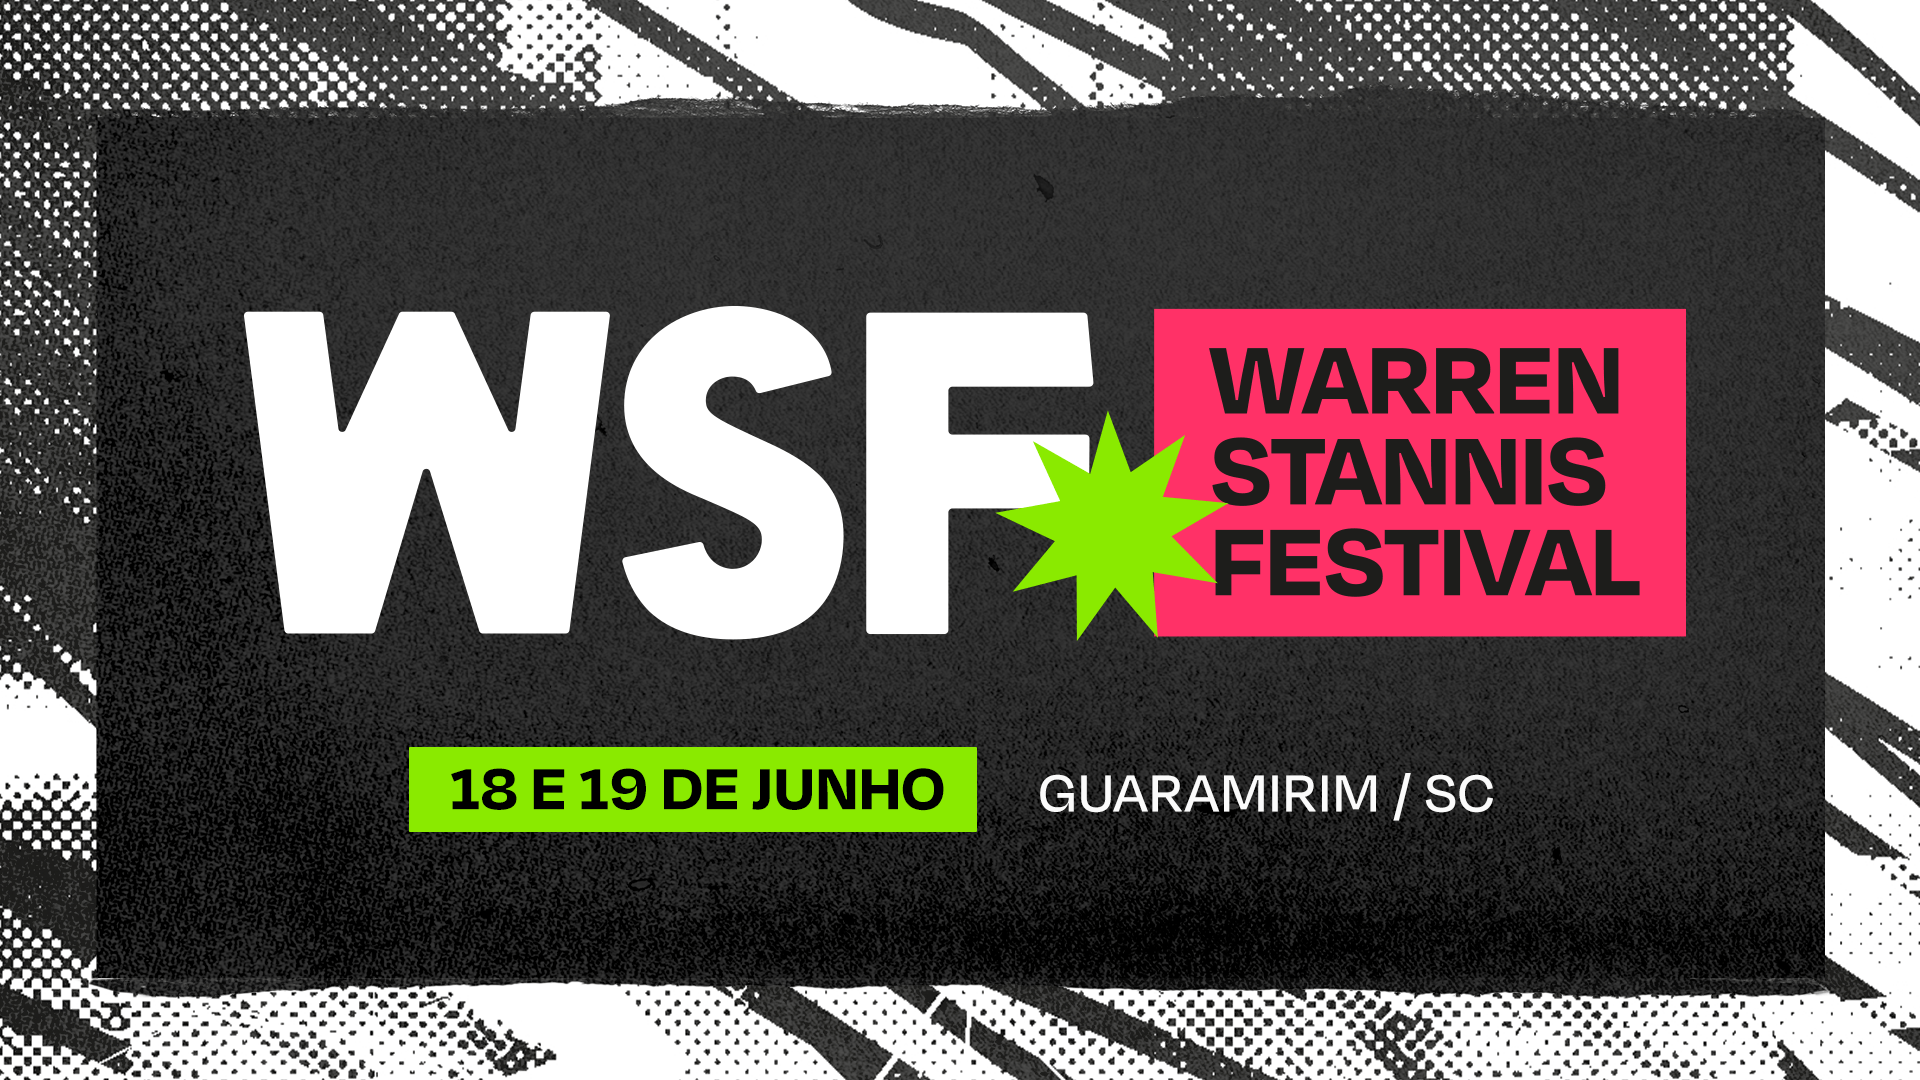 Warren e Cerveja Stannis lançam o Warren Stannis Festival